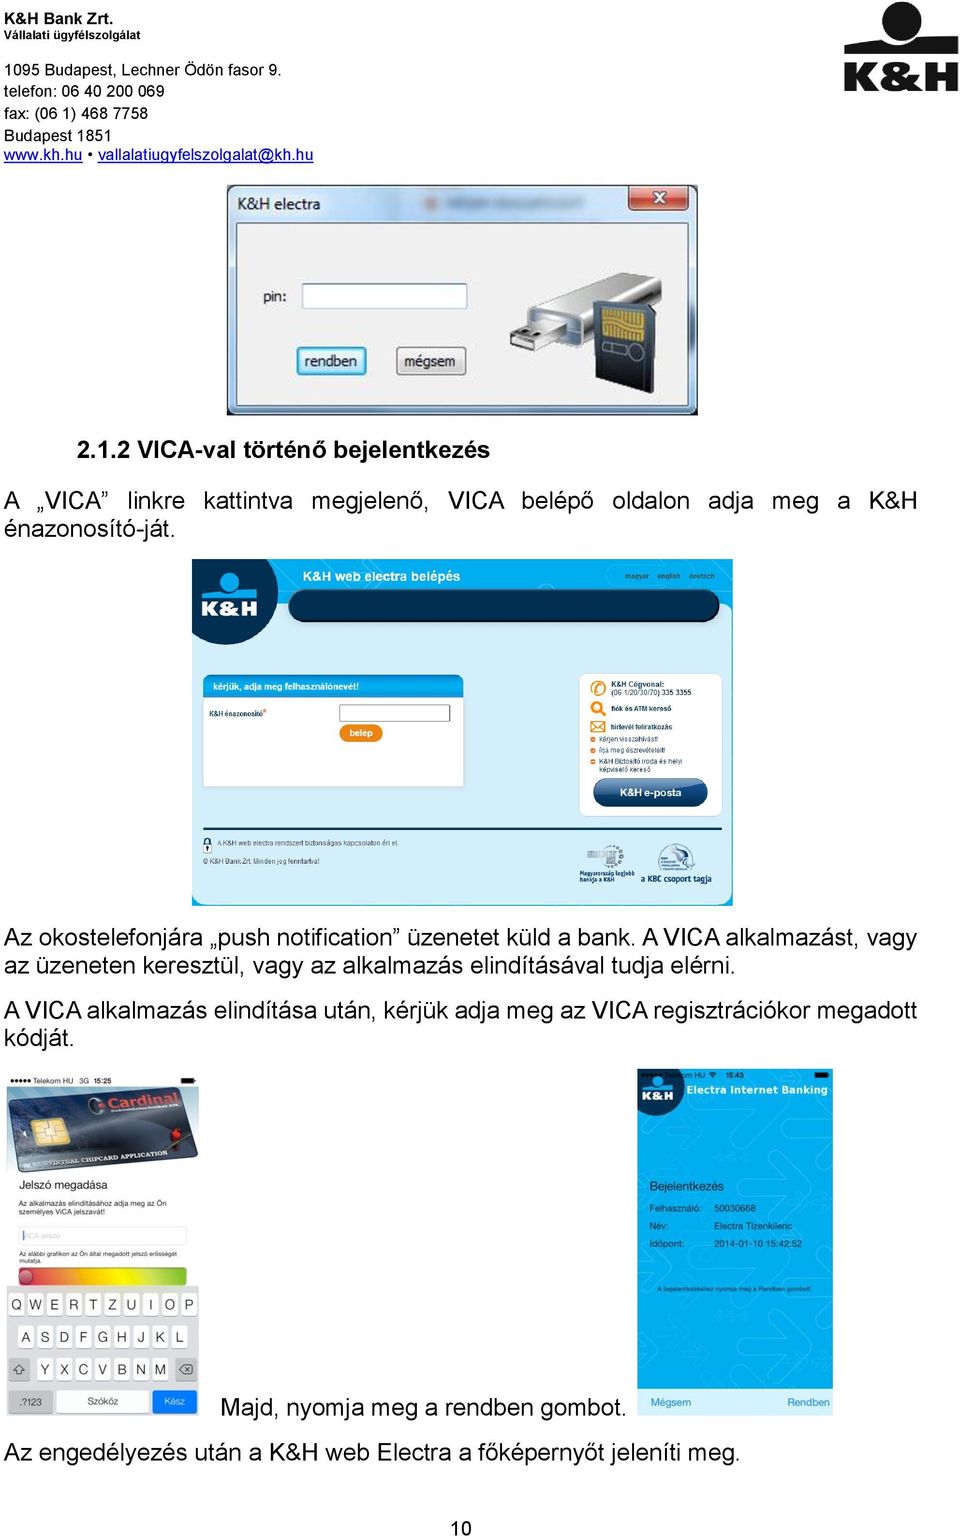 A VICA alkalmazást, vagy az üzeneten keresztül, vagy az alkalmazás elindításával tudja elérni.